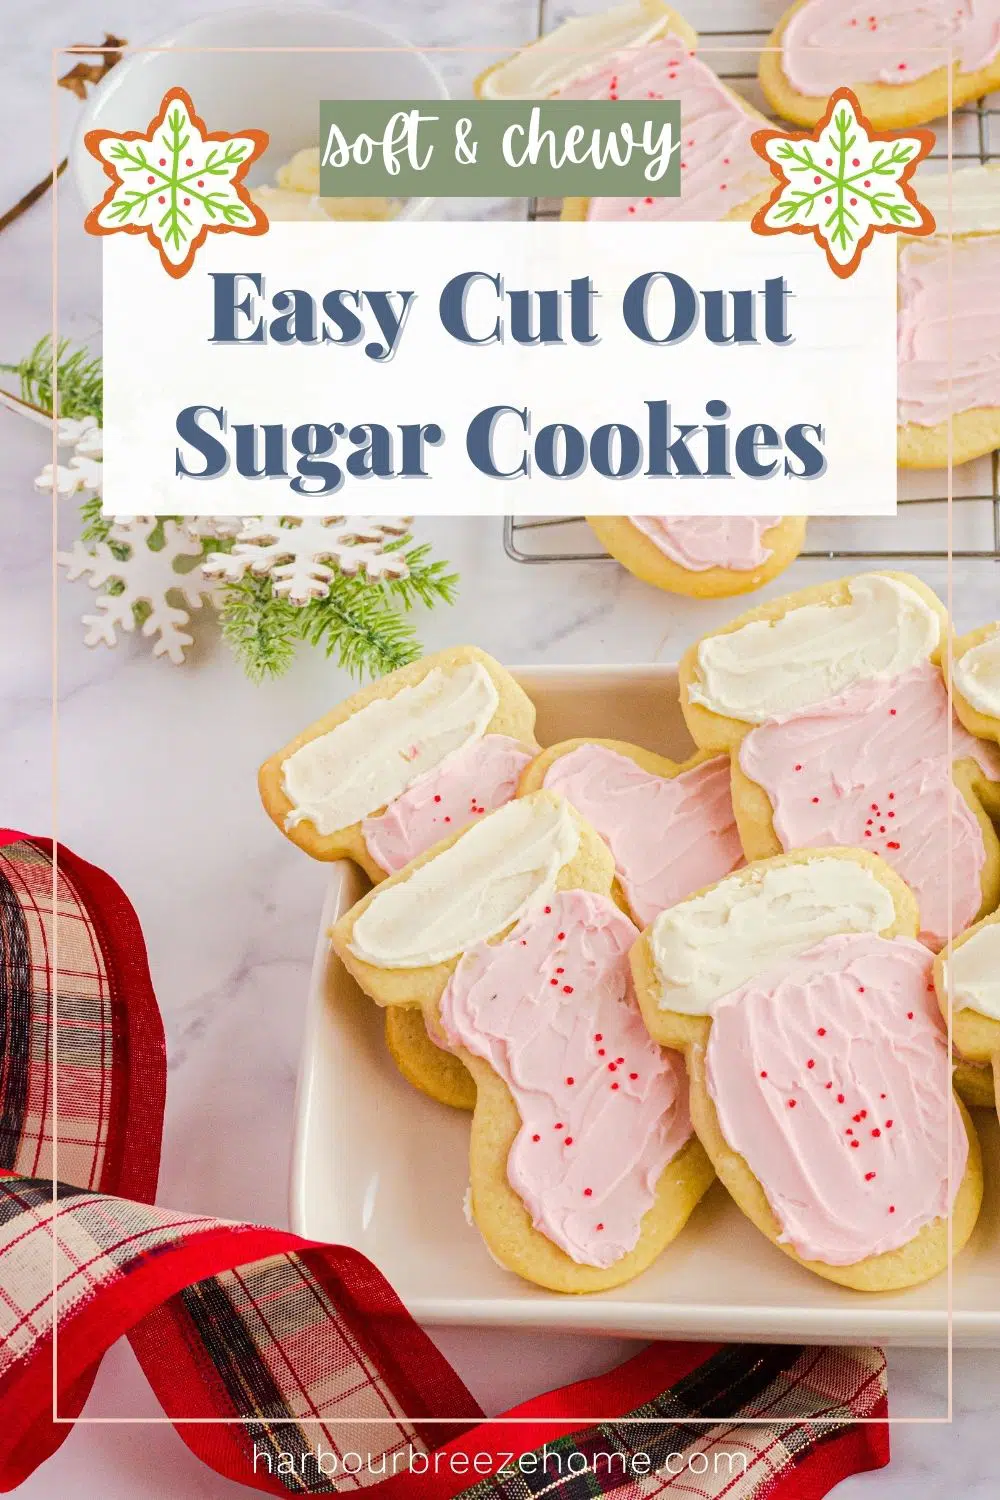 Rolled sugar cookies - cut out sugar cookies